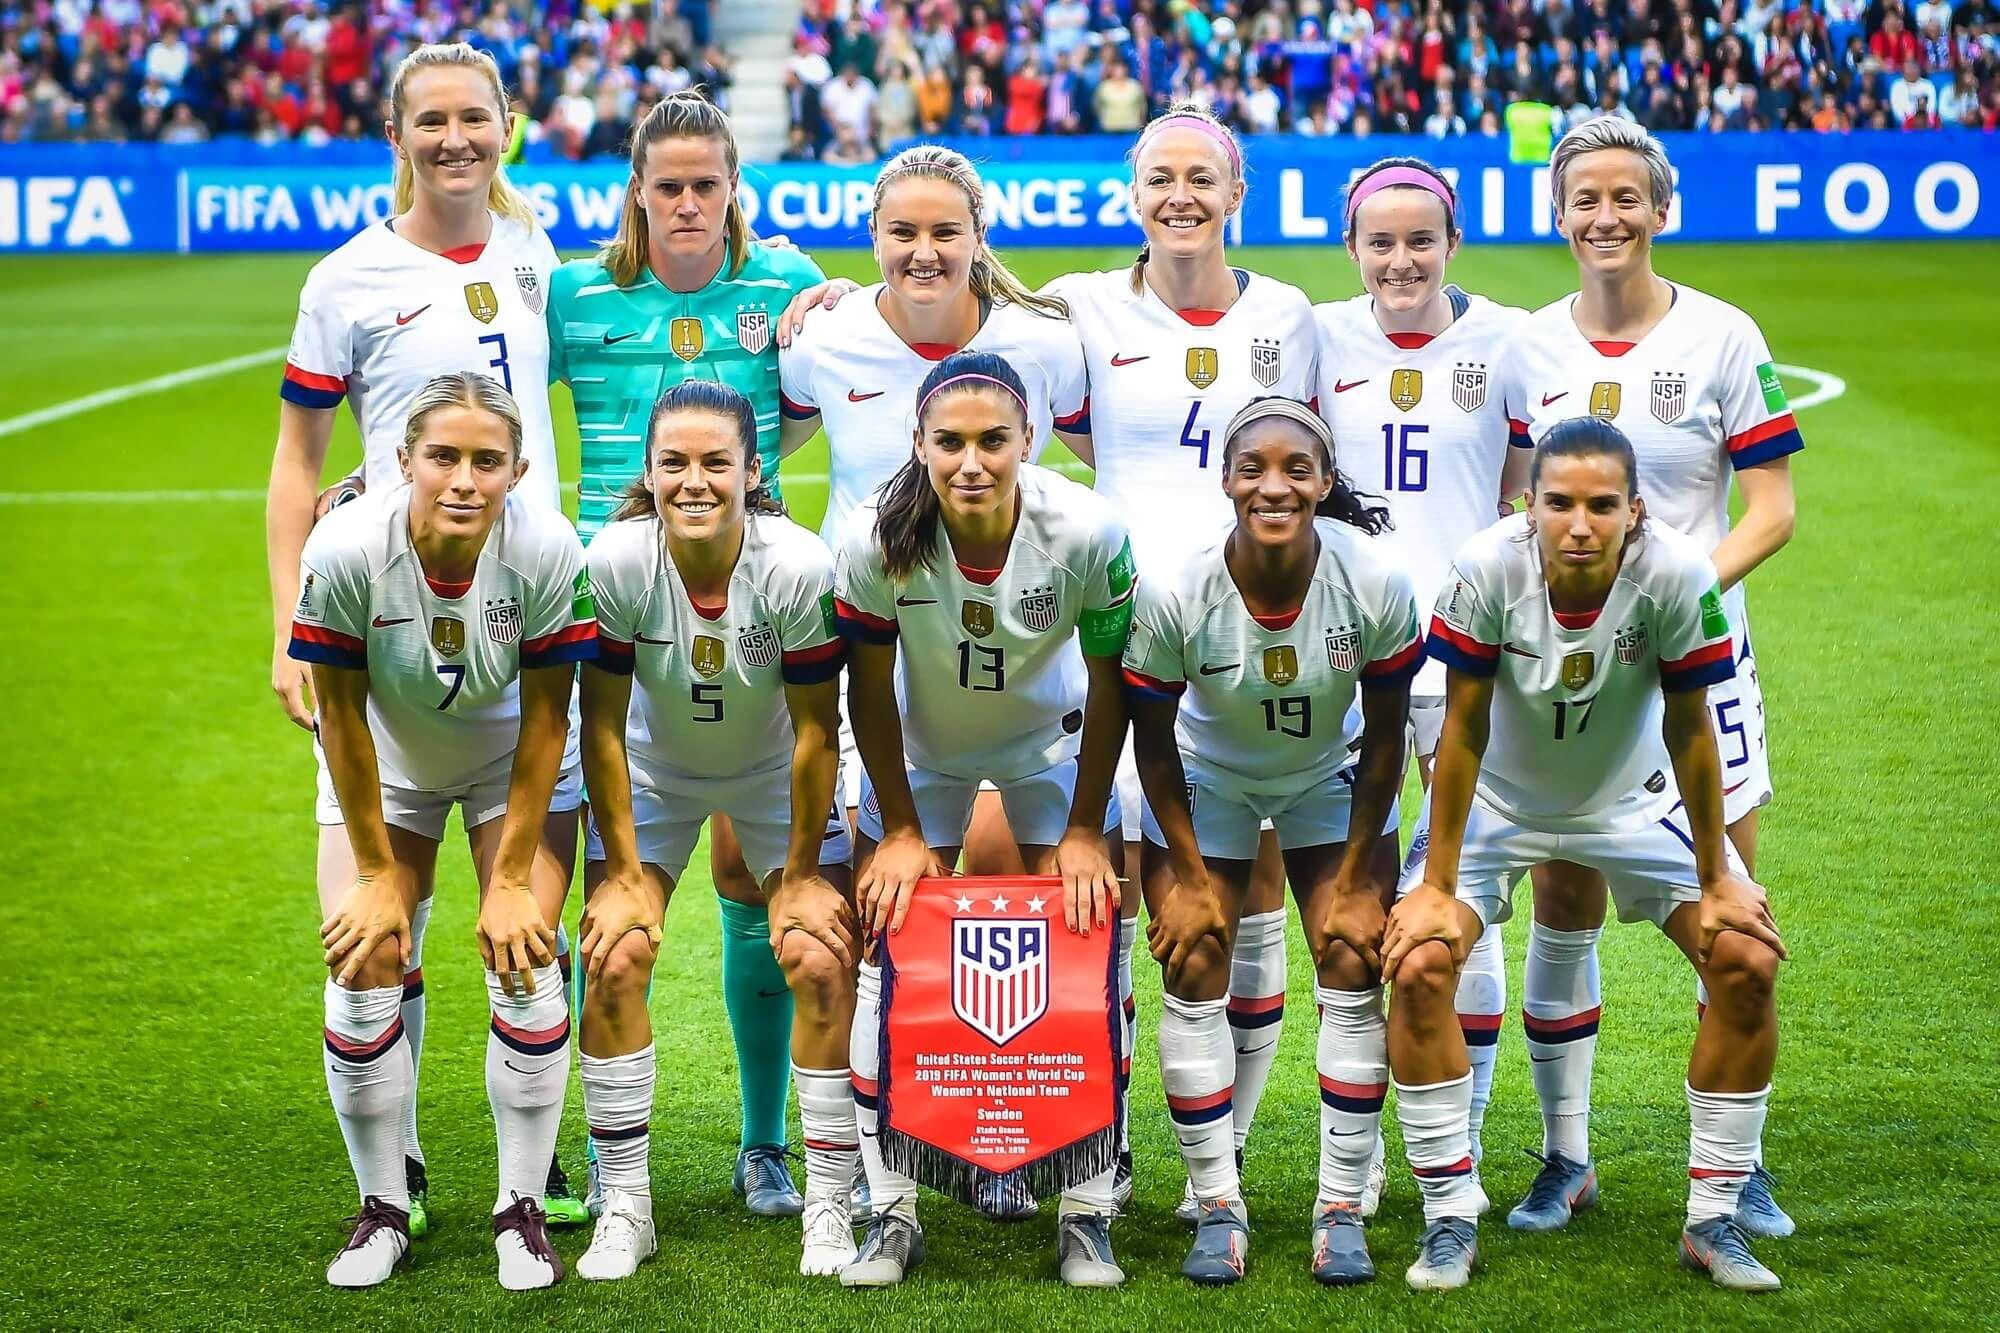 Alineación de la selección femenina de fútbol de Estados Unidos. Foto: Depositphotos